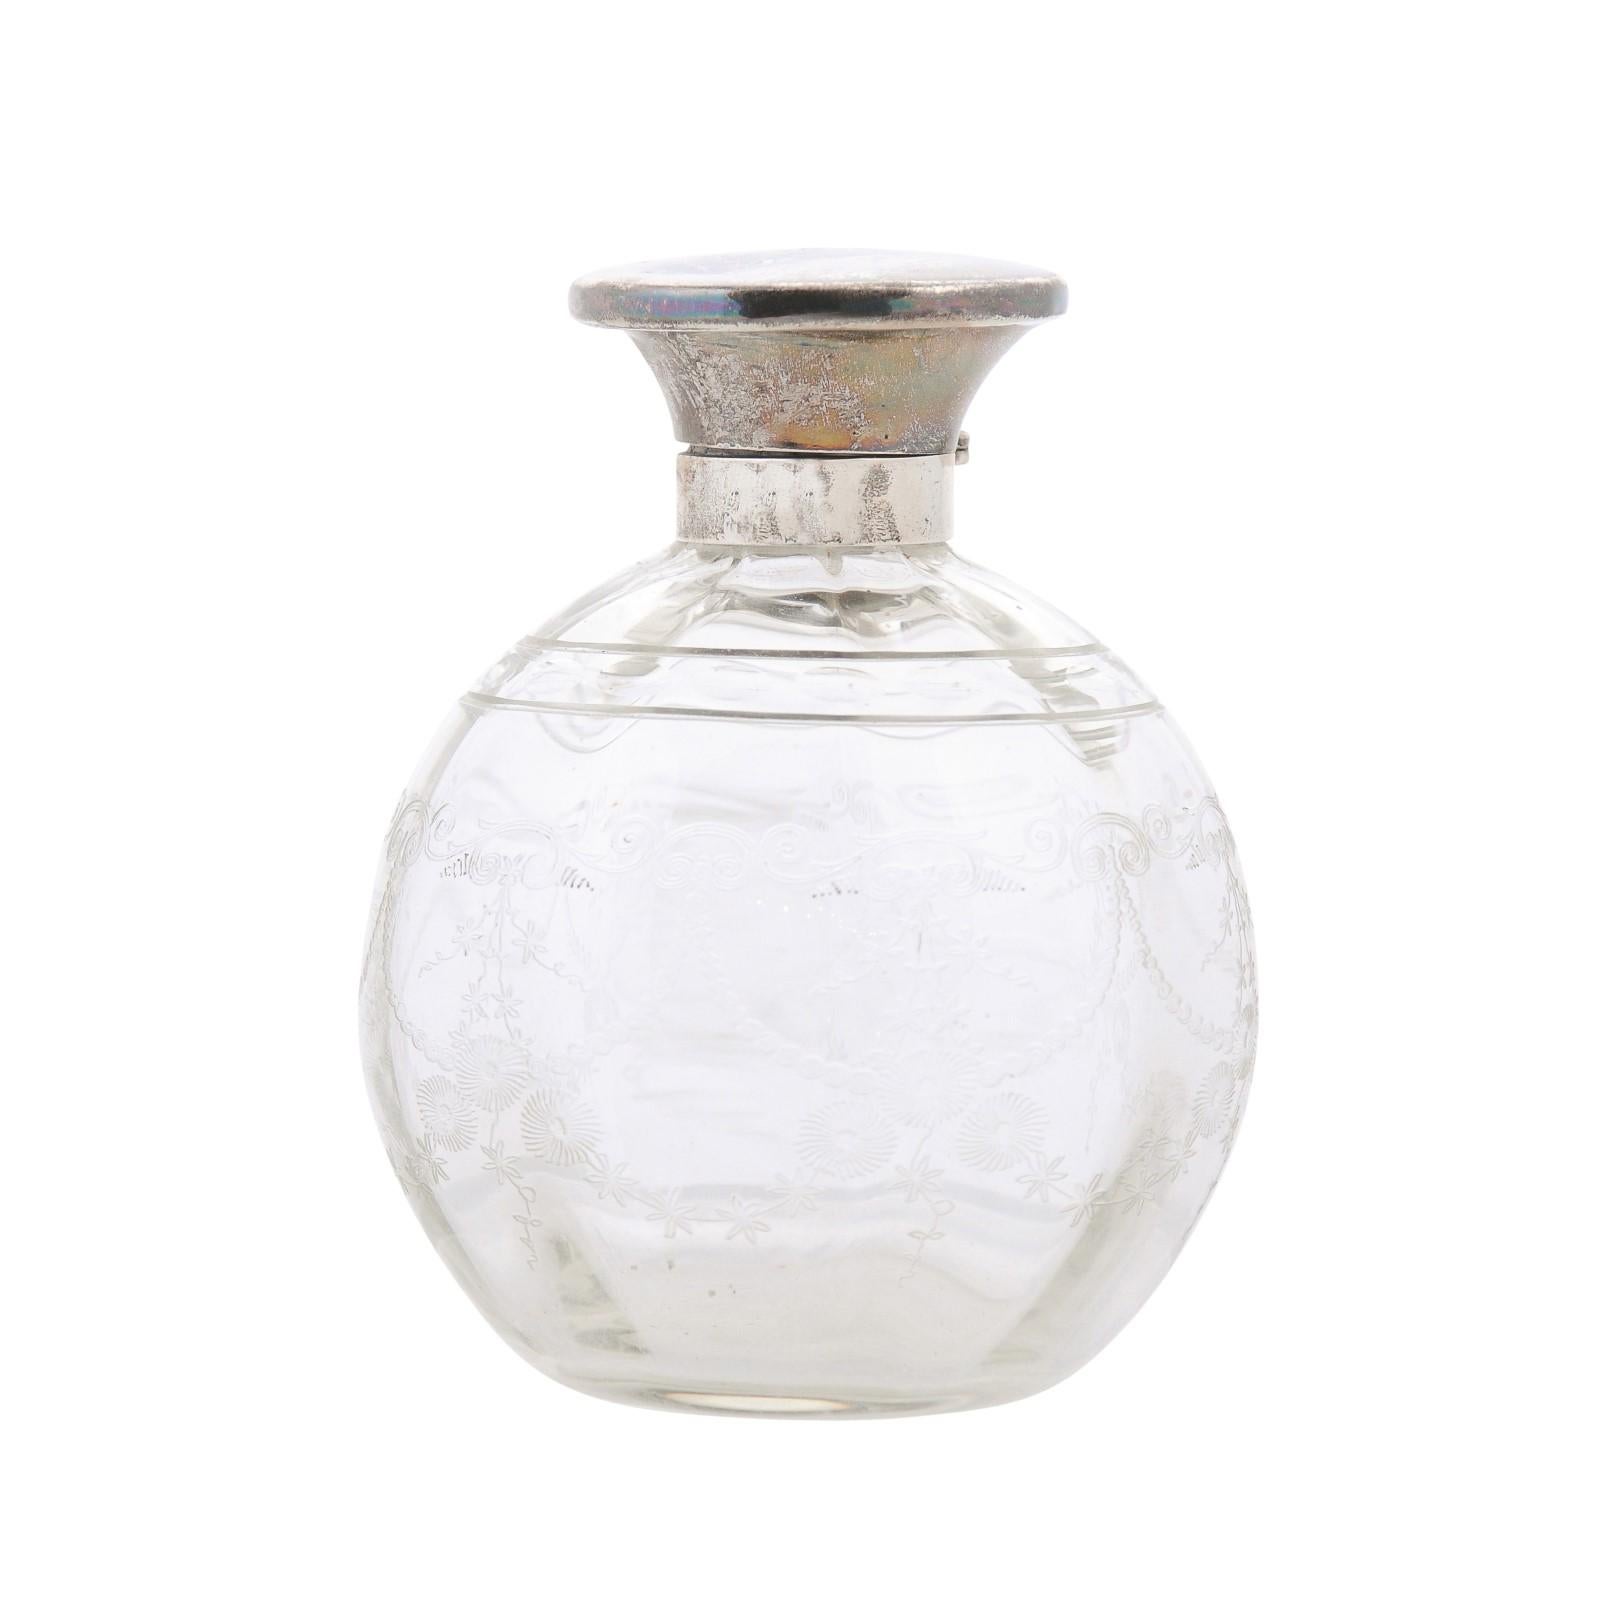 Englische Waschtischflasche aus Glas des 20. Jahrhunderts mit silbernem Deckel und geätztem Design